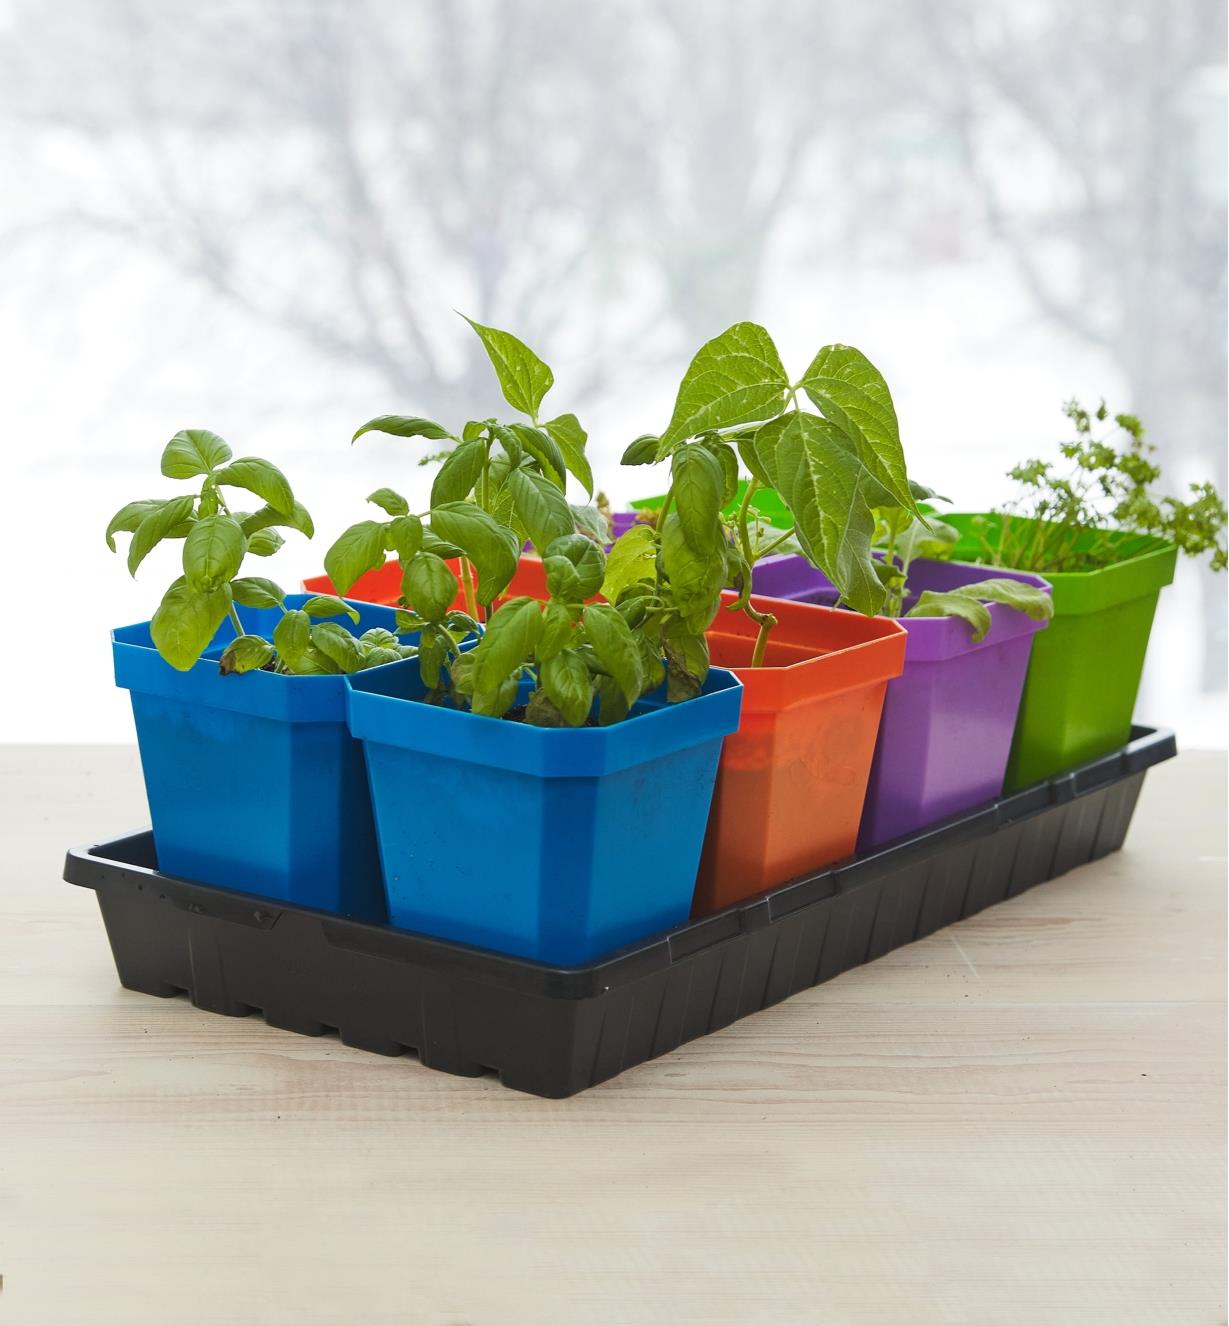 Plateau de culture contenant quatre paires de pots bleus, orange, violets et verts avec de jeunes plants